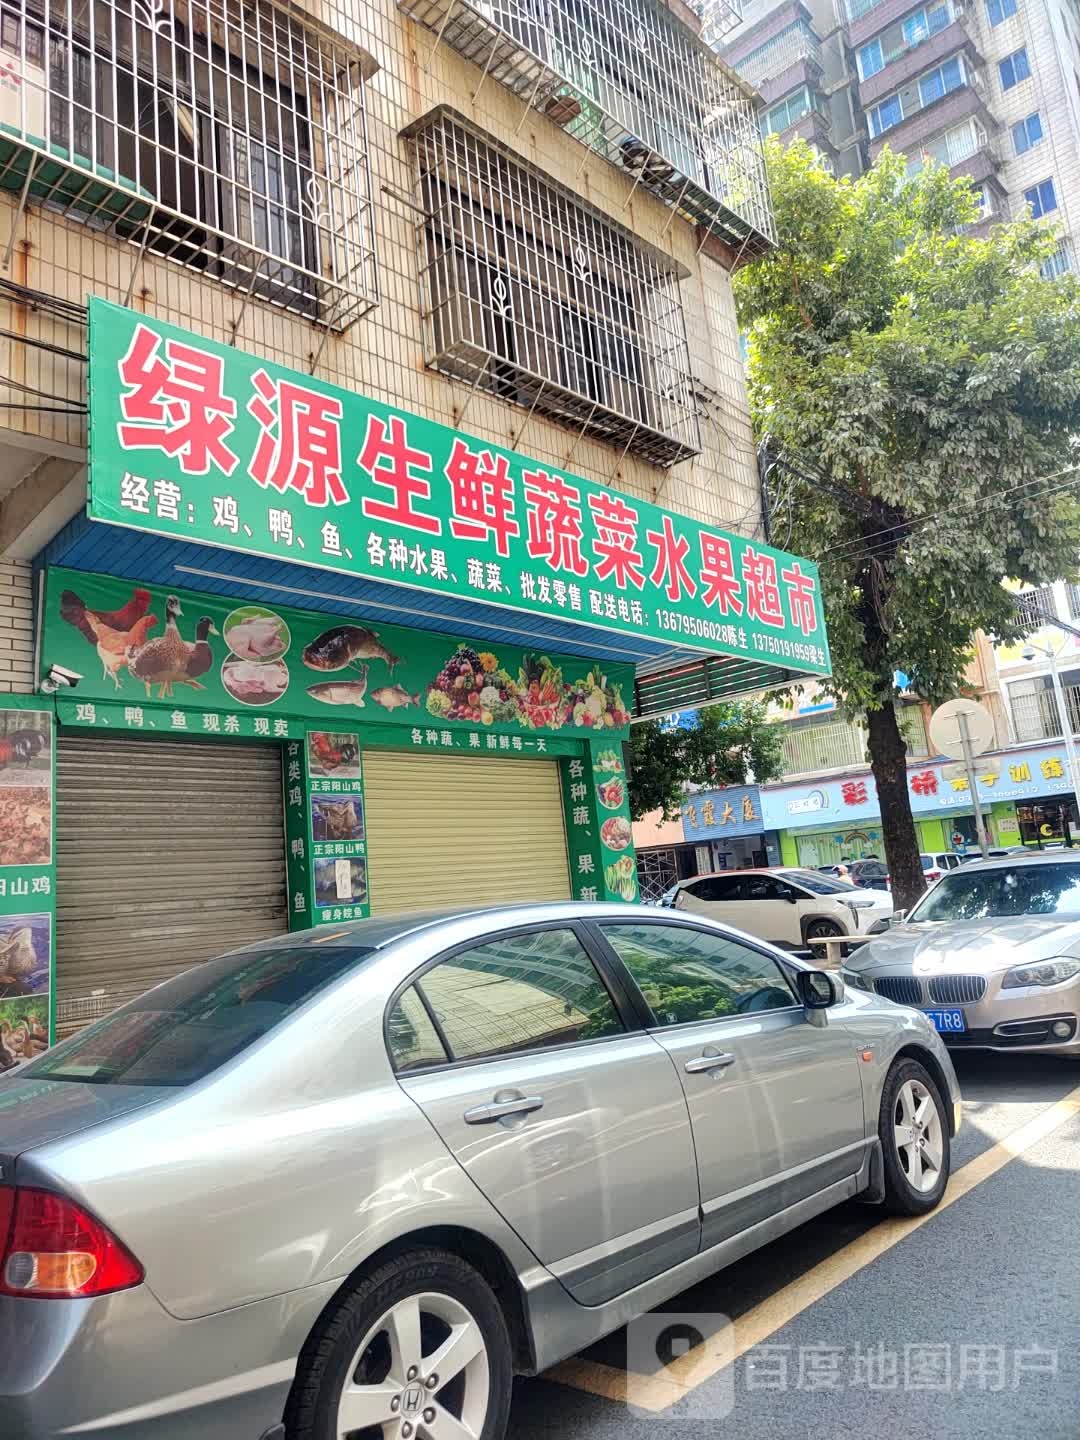 特惠鲜生鲜超市(小古店)